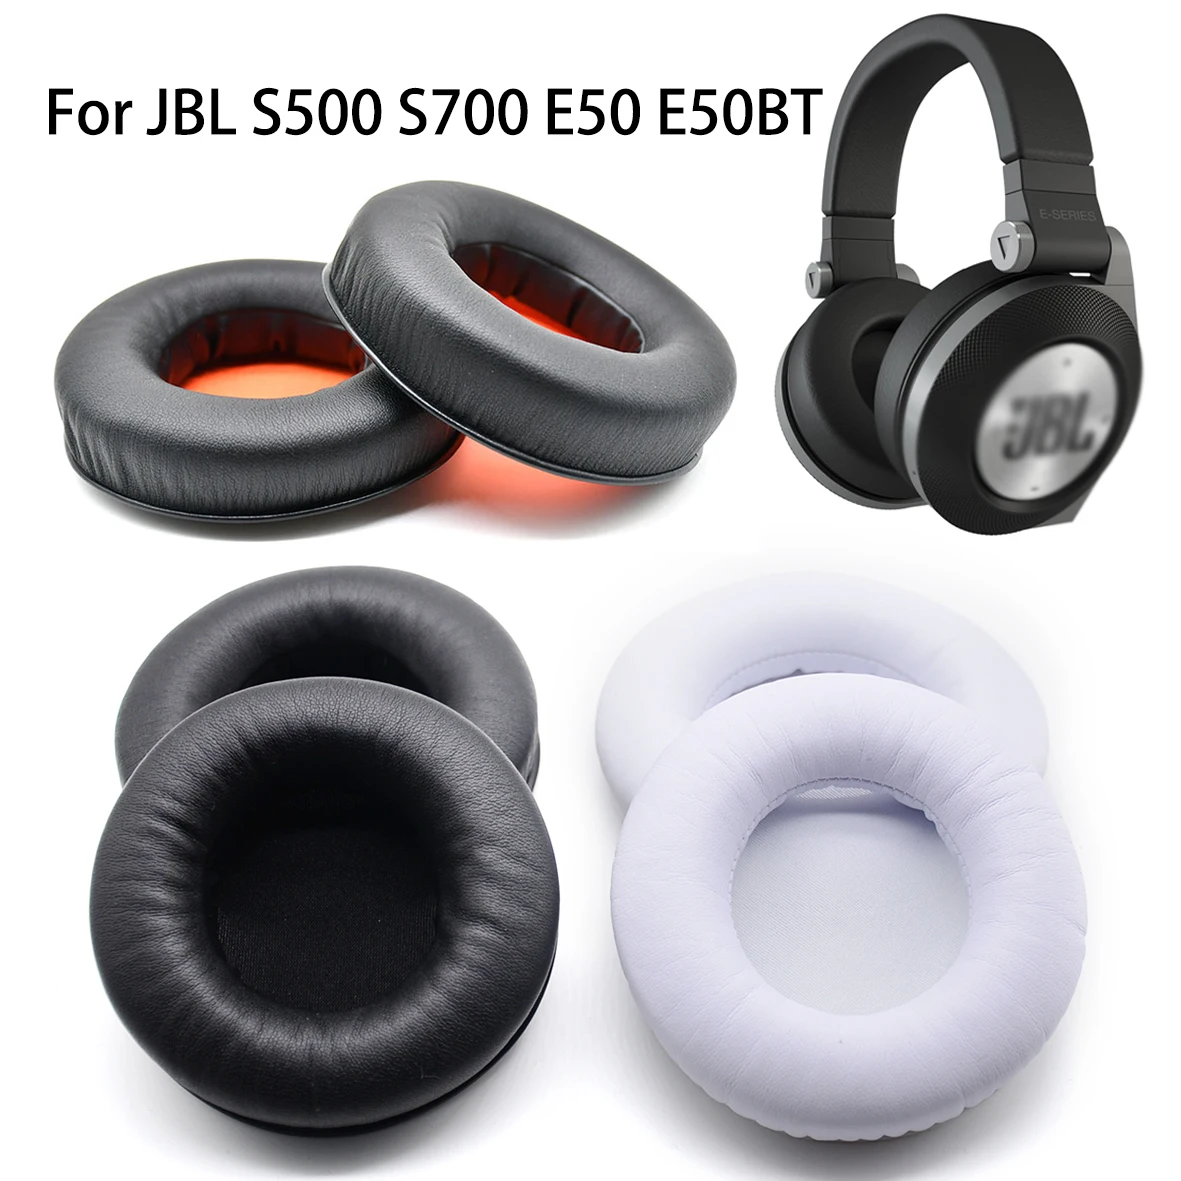 Replacement Ear Pads Earpads Earmuffs For JBL Synchros E50BT E50 BT S500 S700 Wireless Bluetooth Headphones